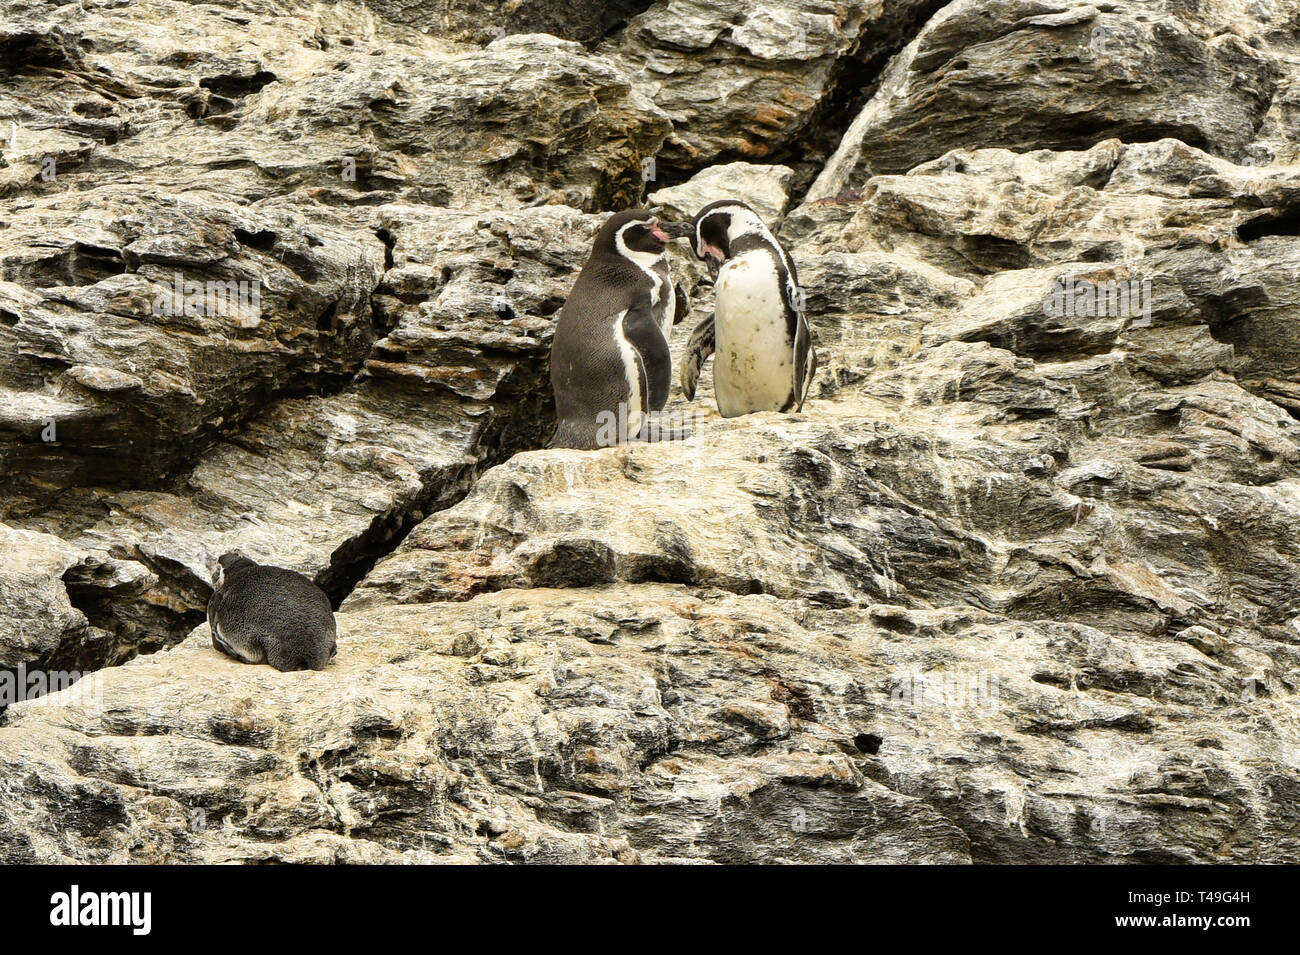 Humboldt penguins (Spheniscus humboldti) on Isla Choros, Humboldt Penguin Reserve, Punta Choros, Chile Stock Photo